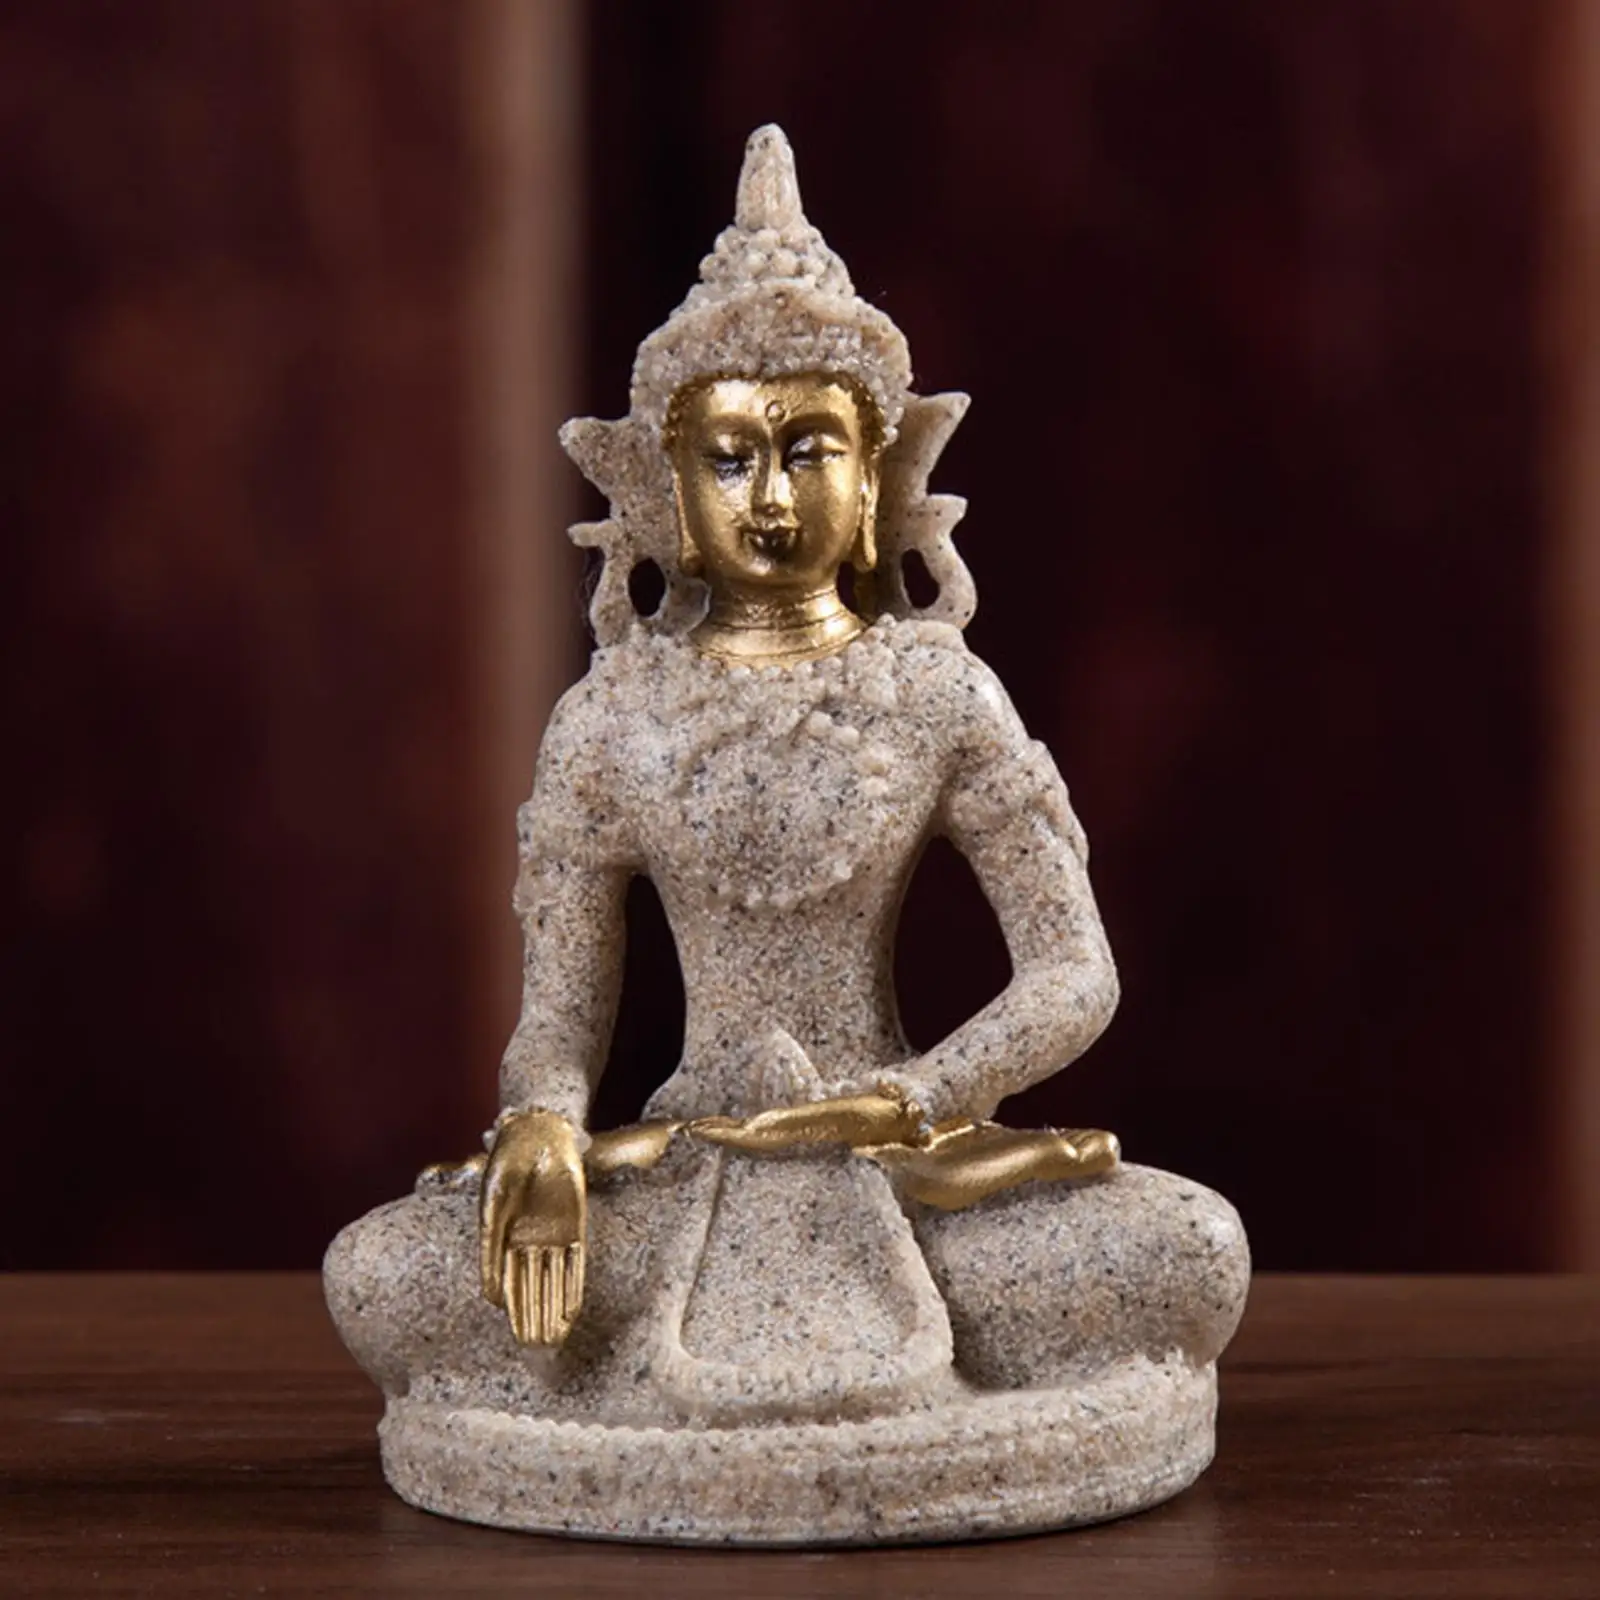 

Декоративная скульптура из песчаника фигура сидящего скульптура Будды, статуя Мира спокойствие и Farmonious украшения